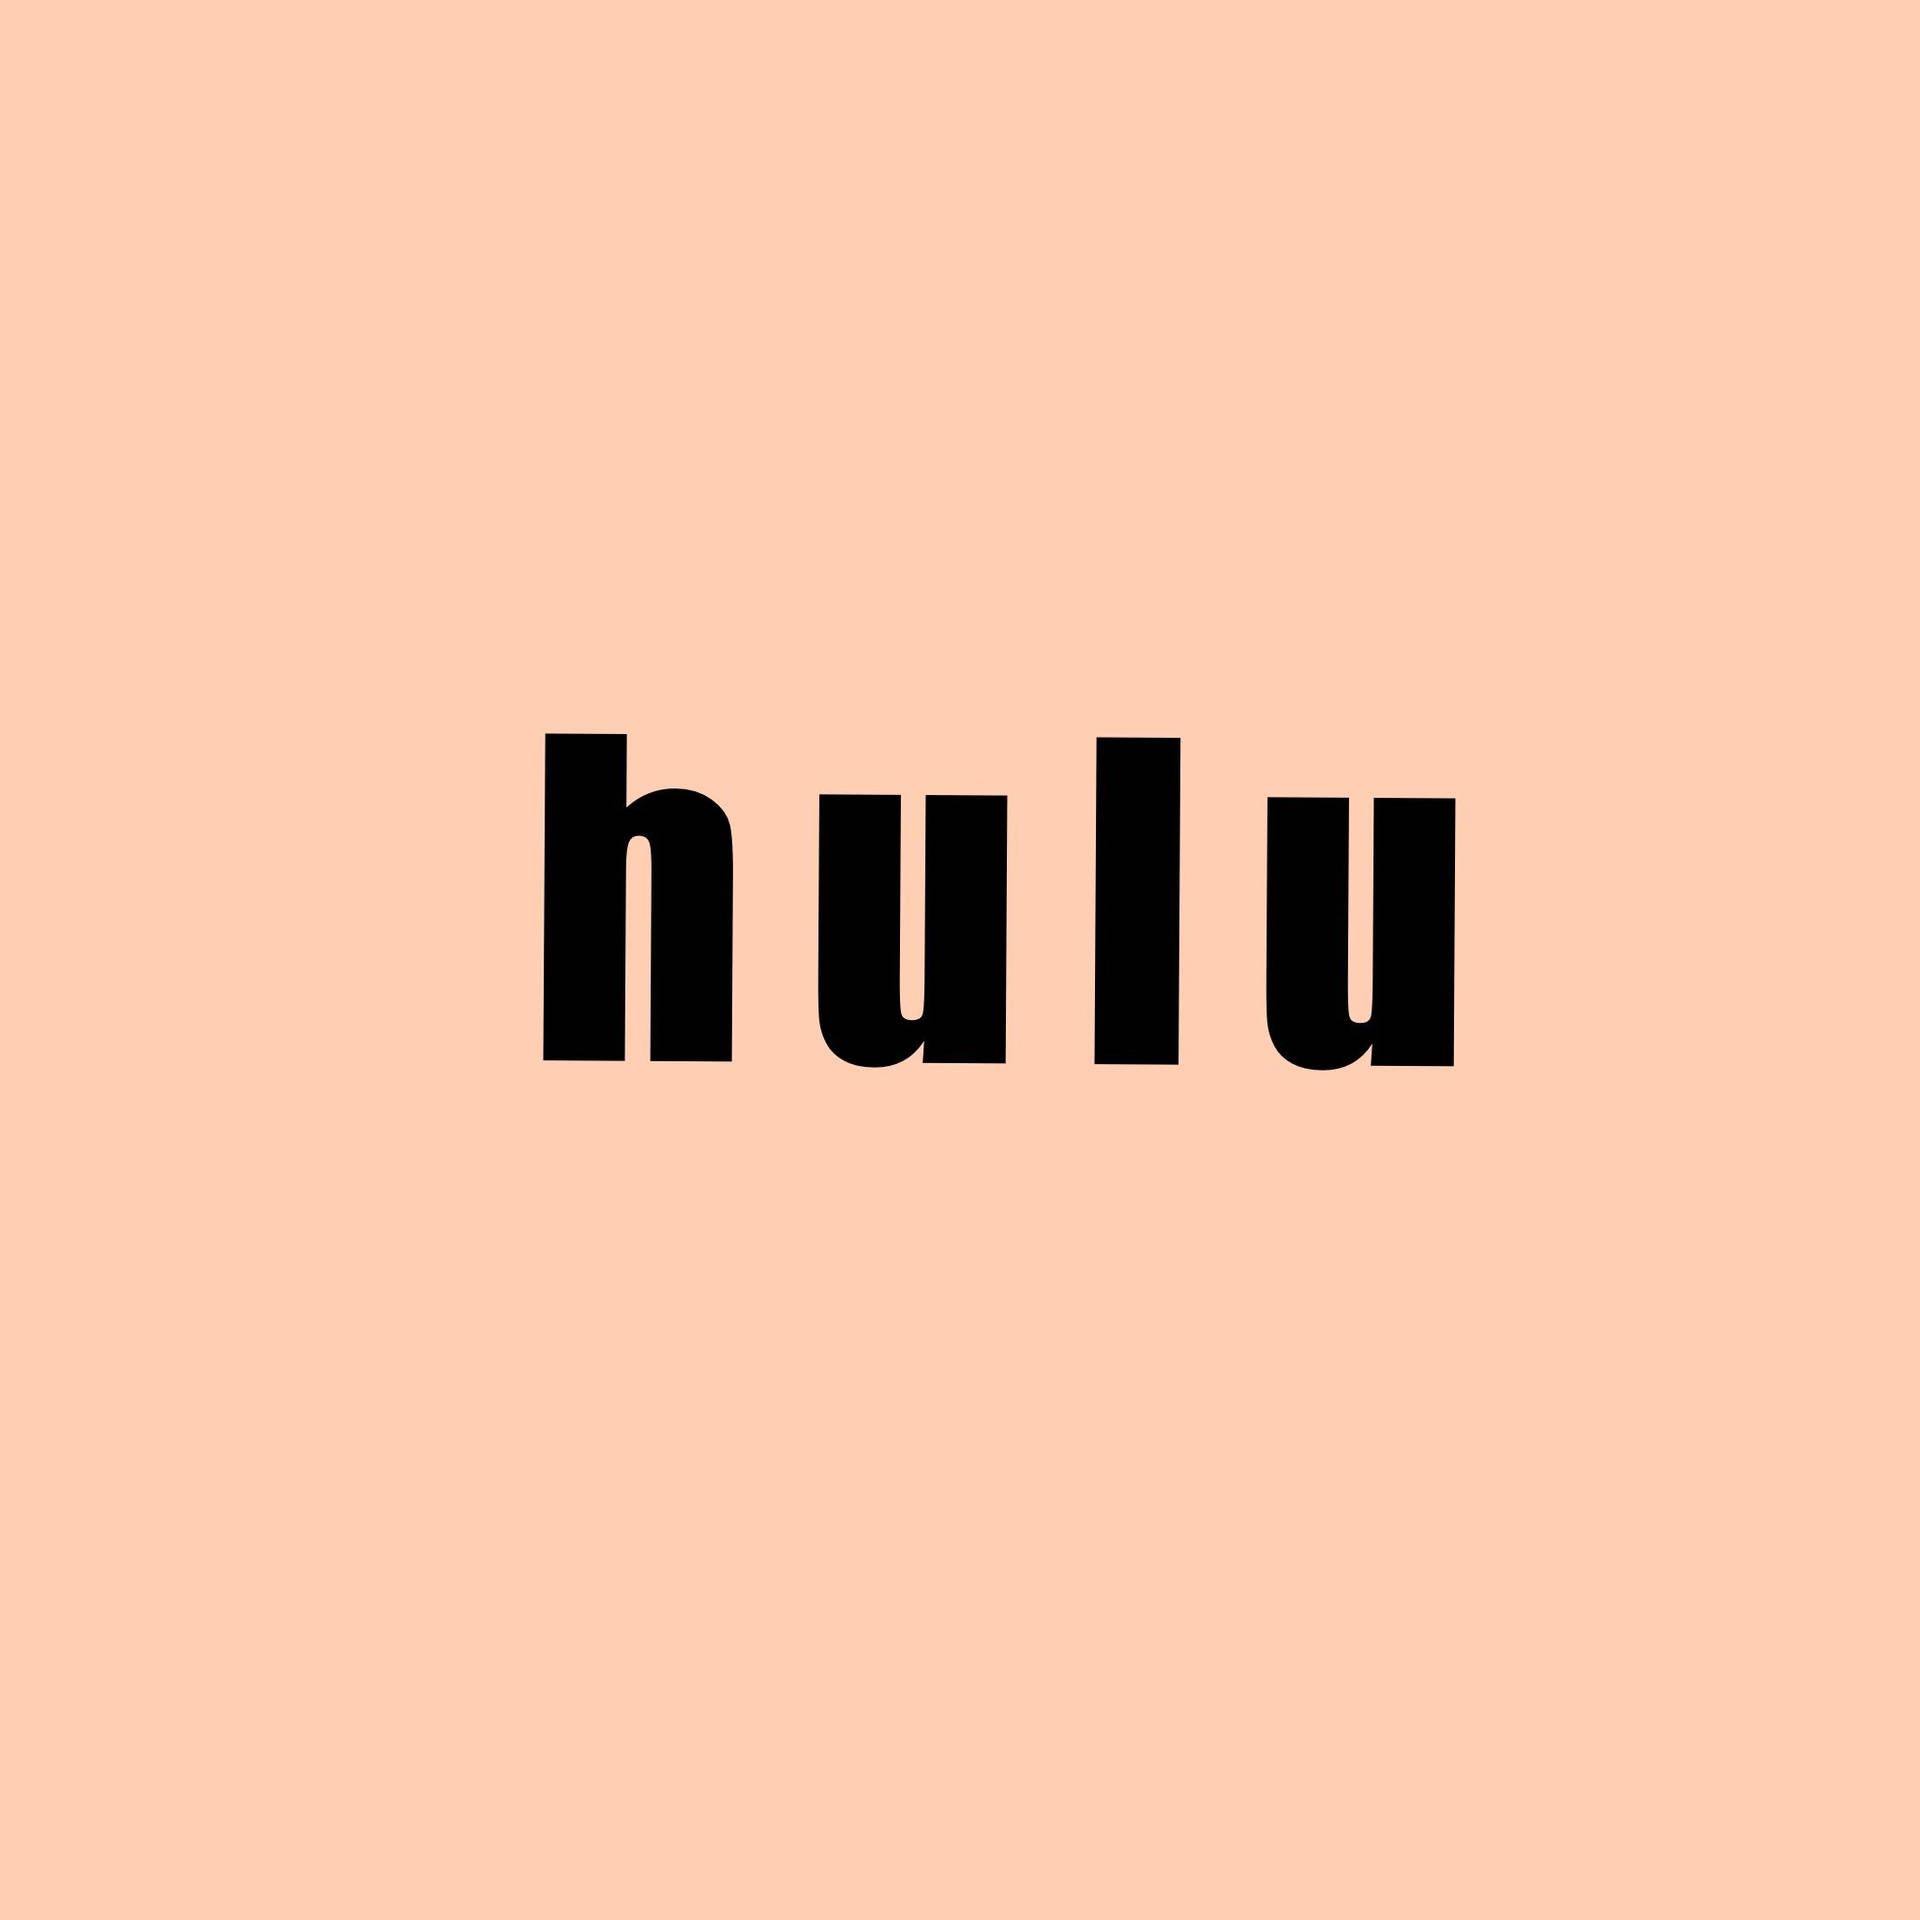 Hulu In Peach Background